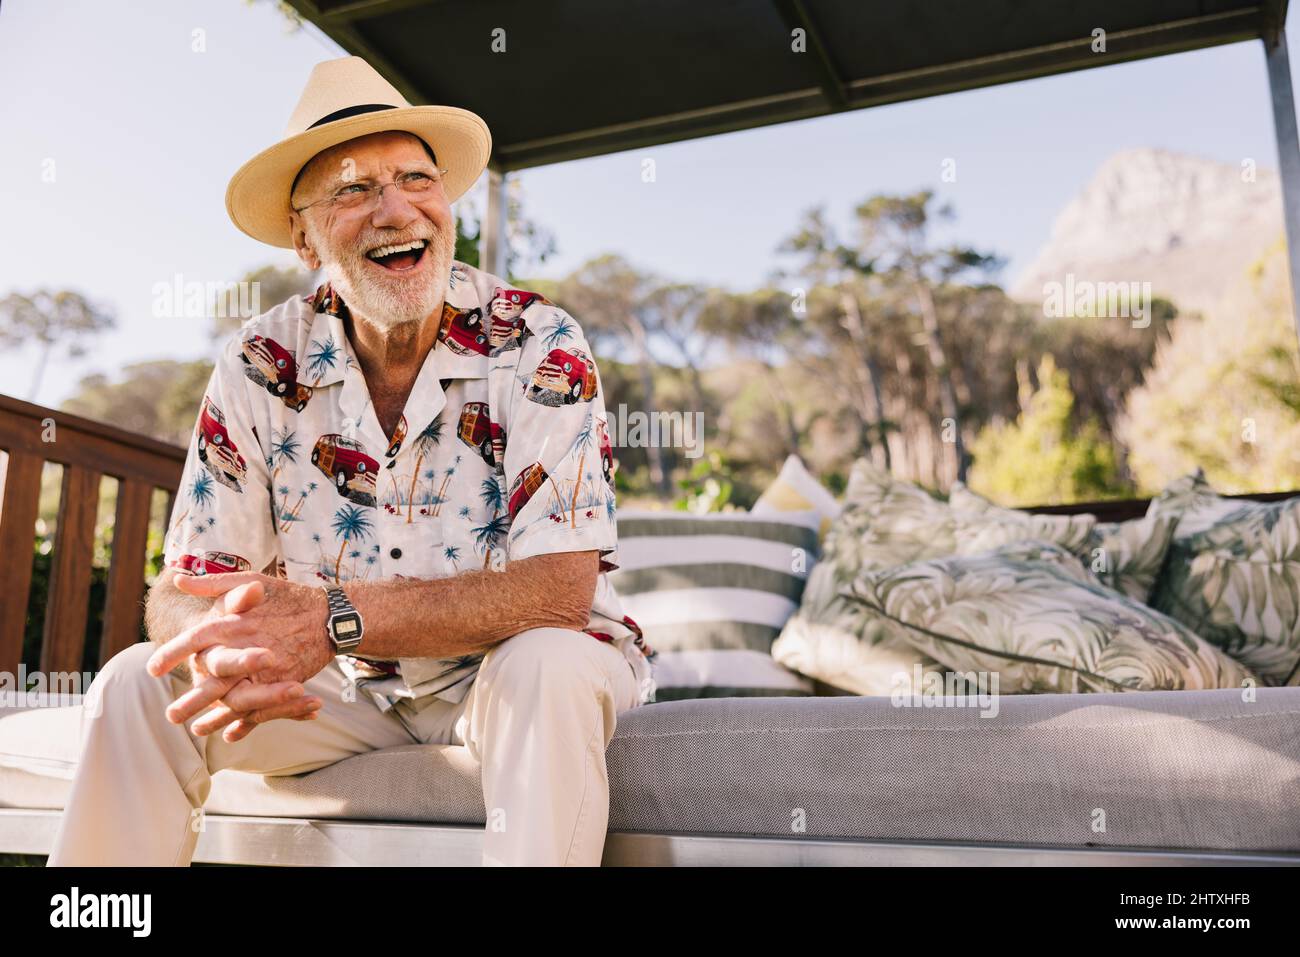 vacanze dopo la pensione. Un uomo anziano felice che ride allegramente mentre si rilassa su un divano in un lussuoso resort termale. Un uomo anziano spensierato che si diverte Foto Stock